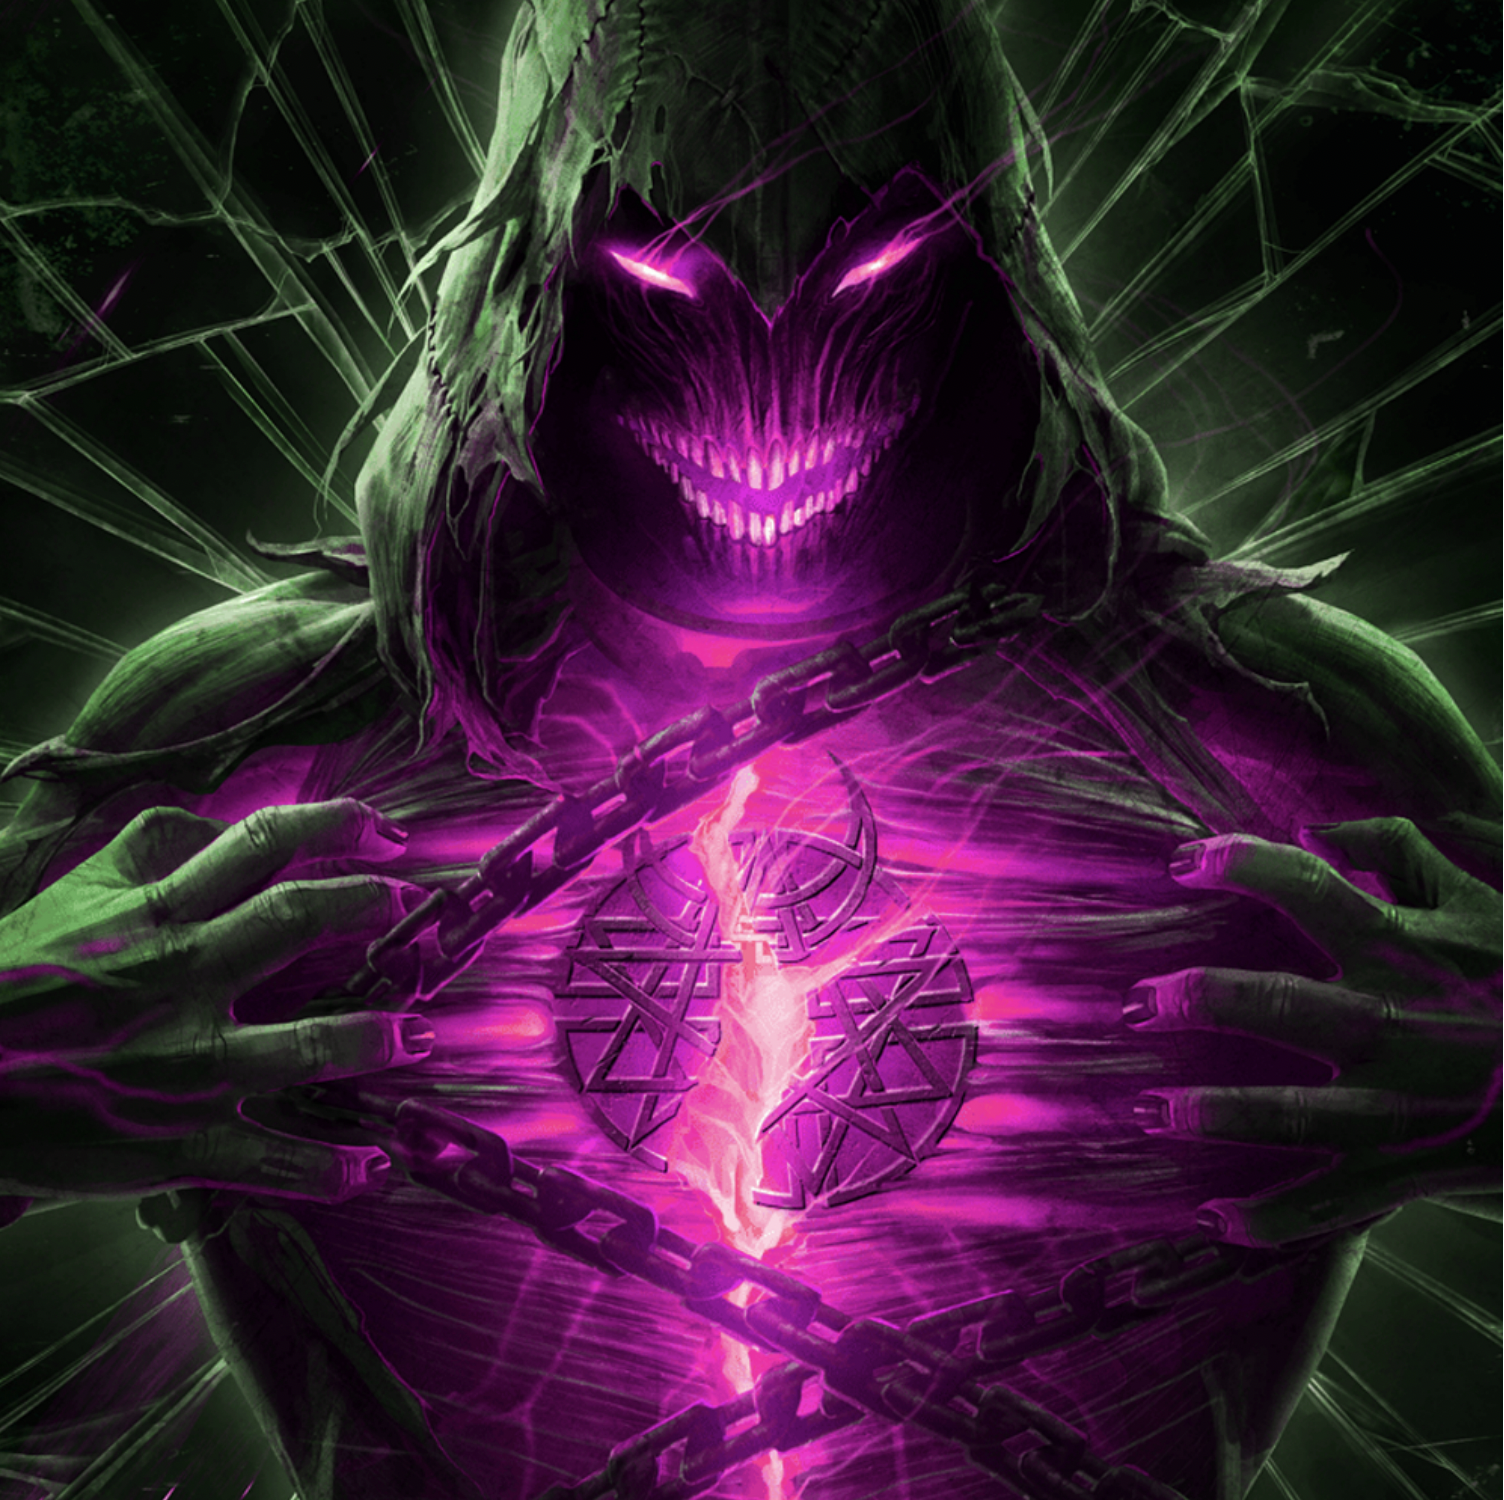 Disturbed's "Bad Man" (Kordhell Remix) artwork